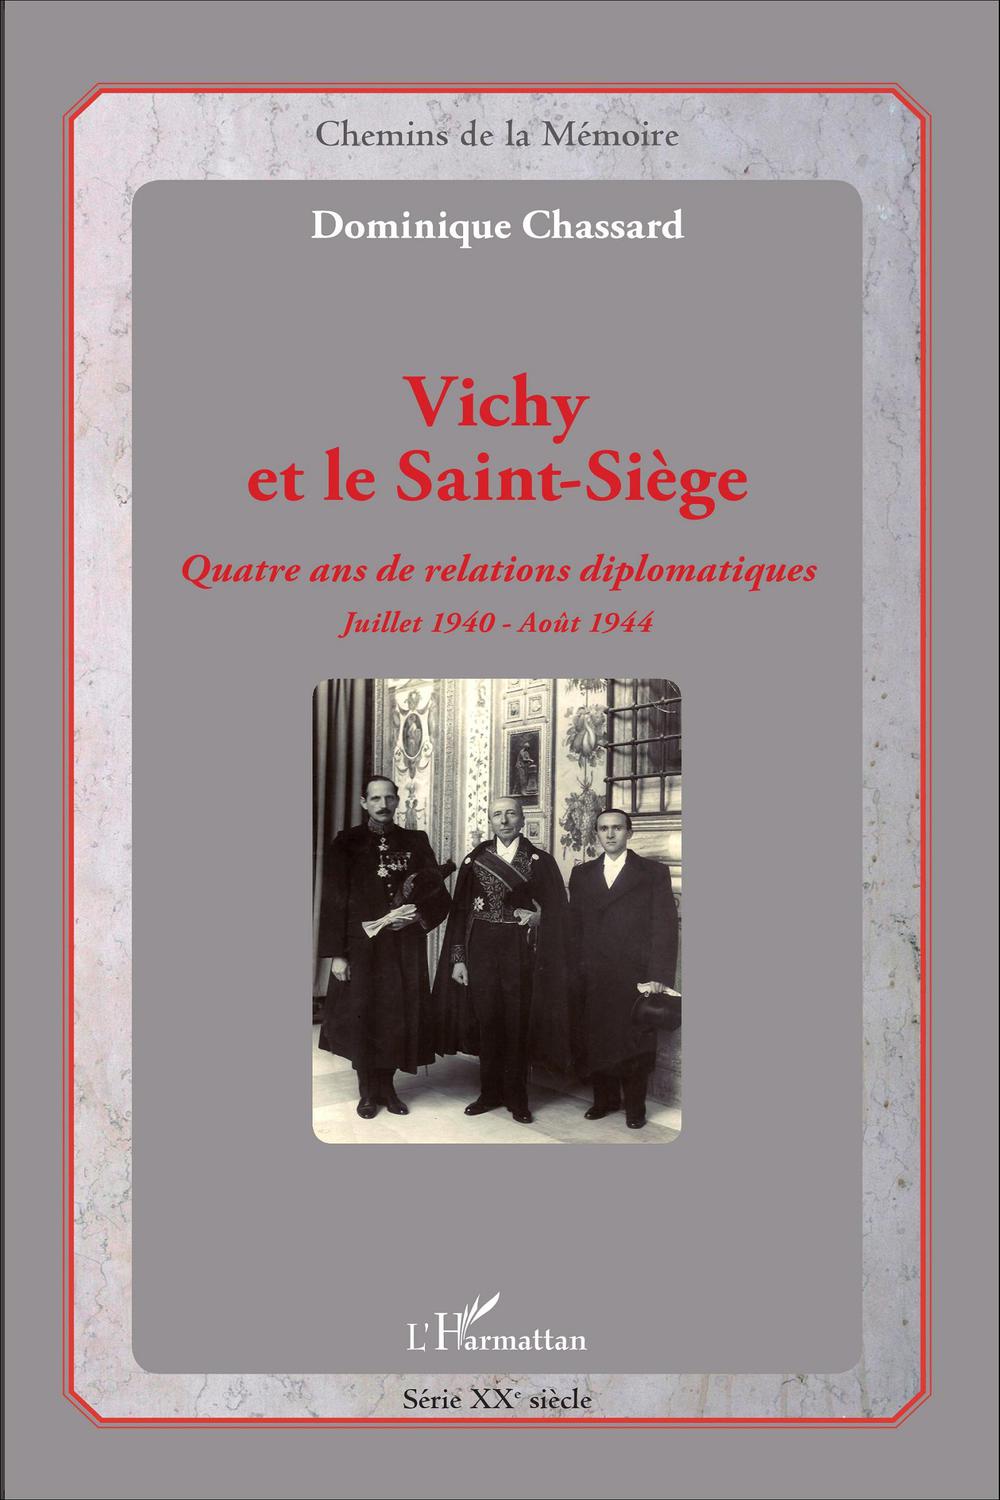 Vichy et le Saint-Siège - Dominique Chassard